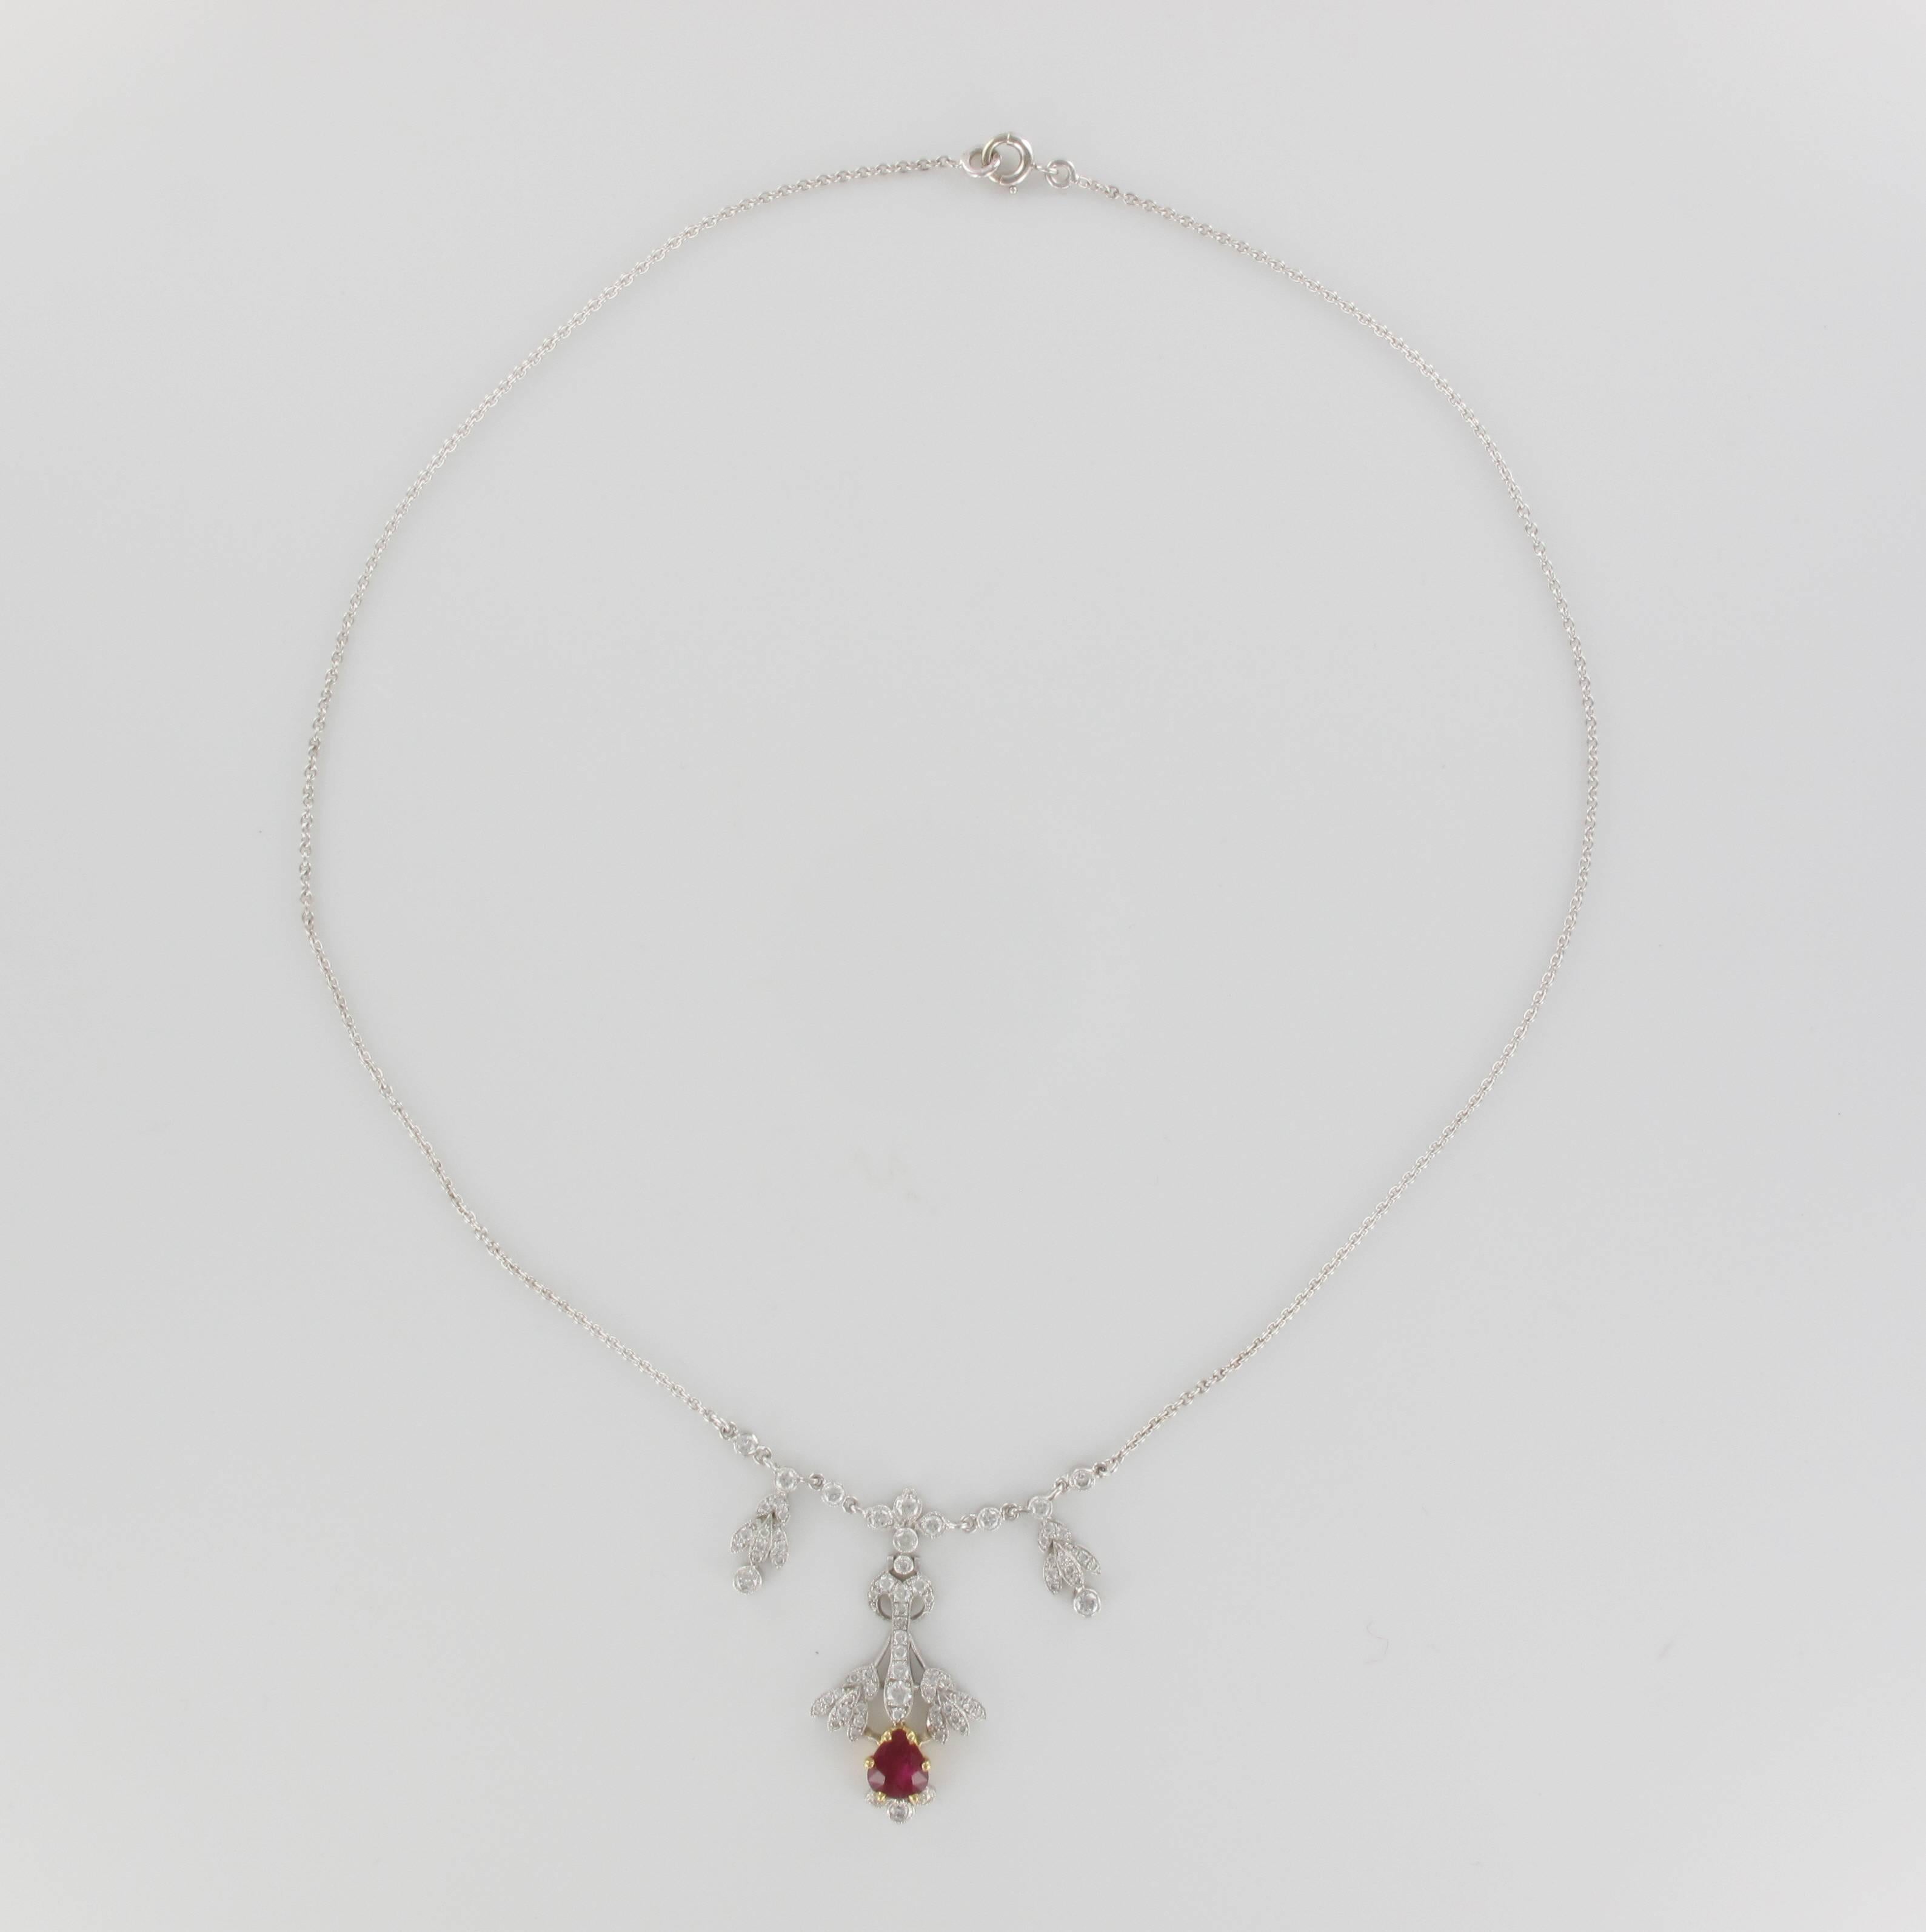 Belle Époque Belle Epoque Style Platinum 1.16 Carat Ruby 1.06 Carat Diamond Pendant Necklace For Sale